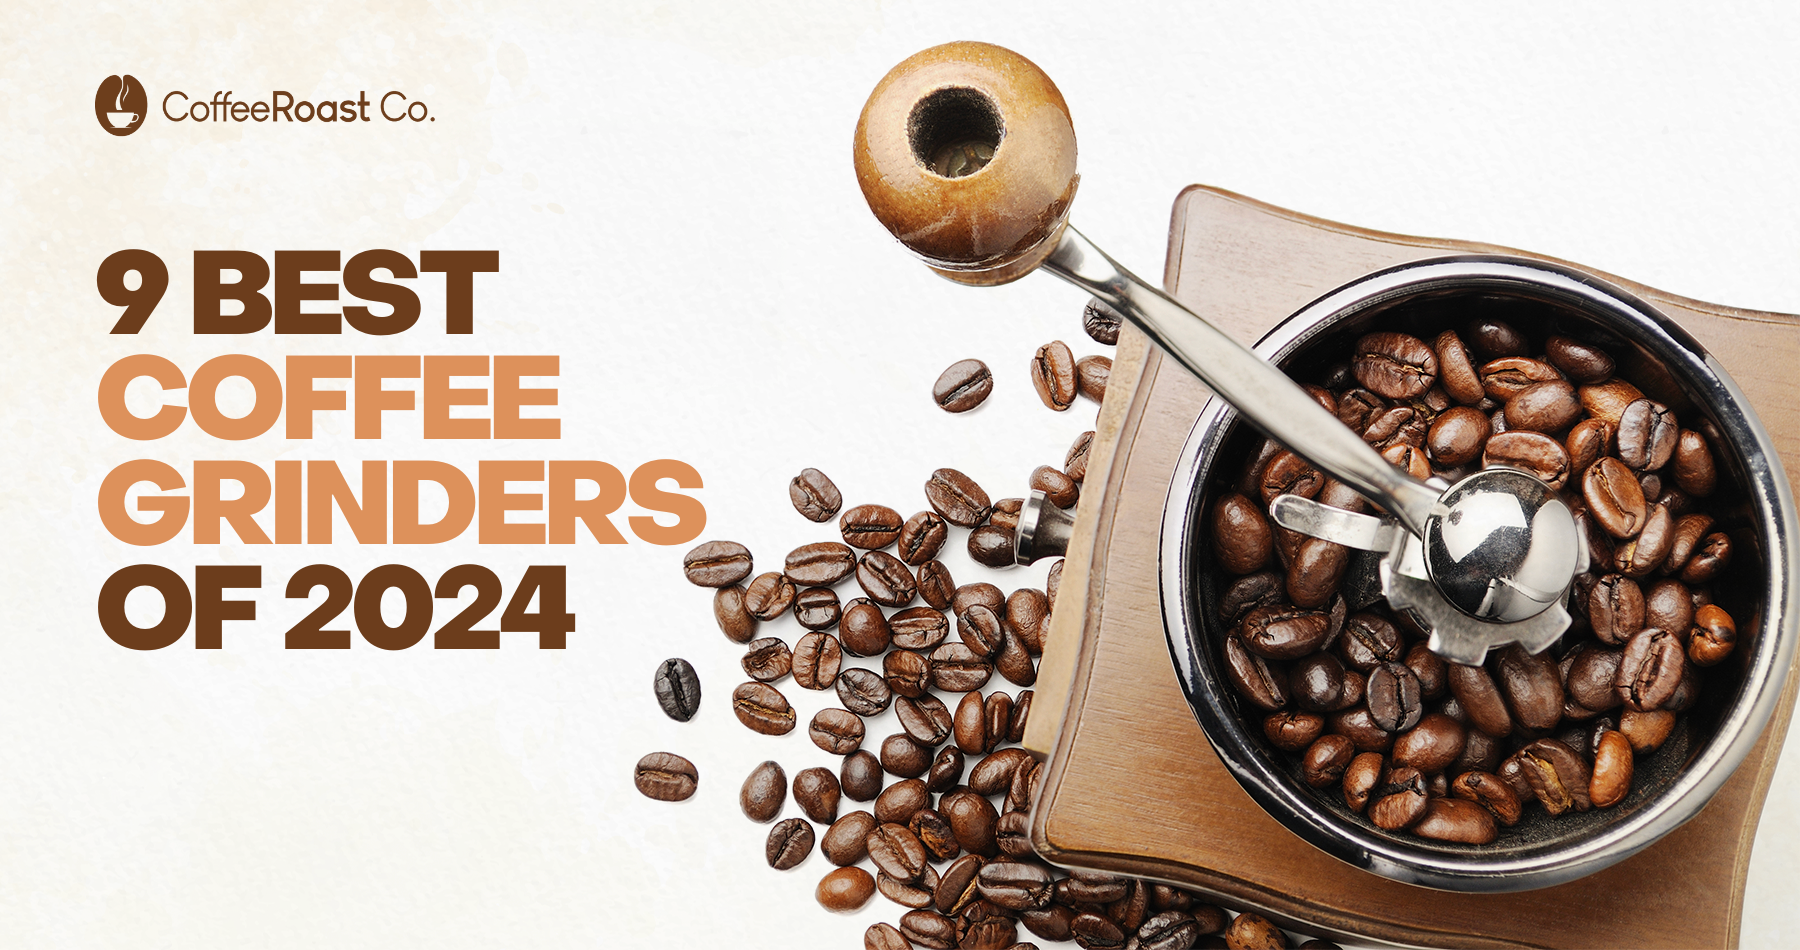 9 Best Coffee Grinders of 2024